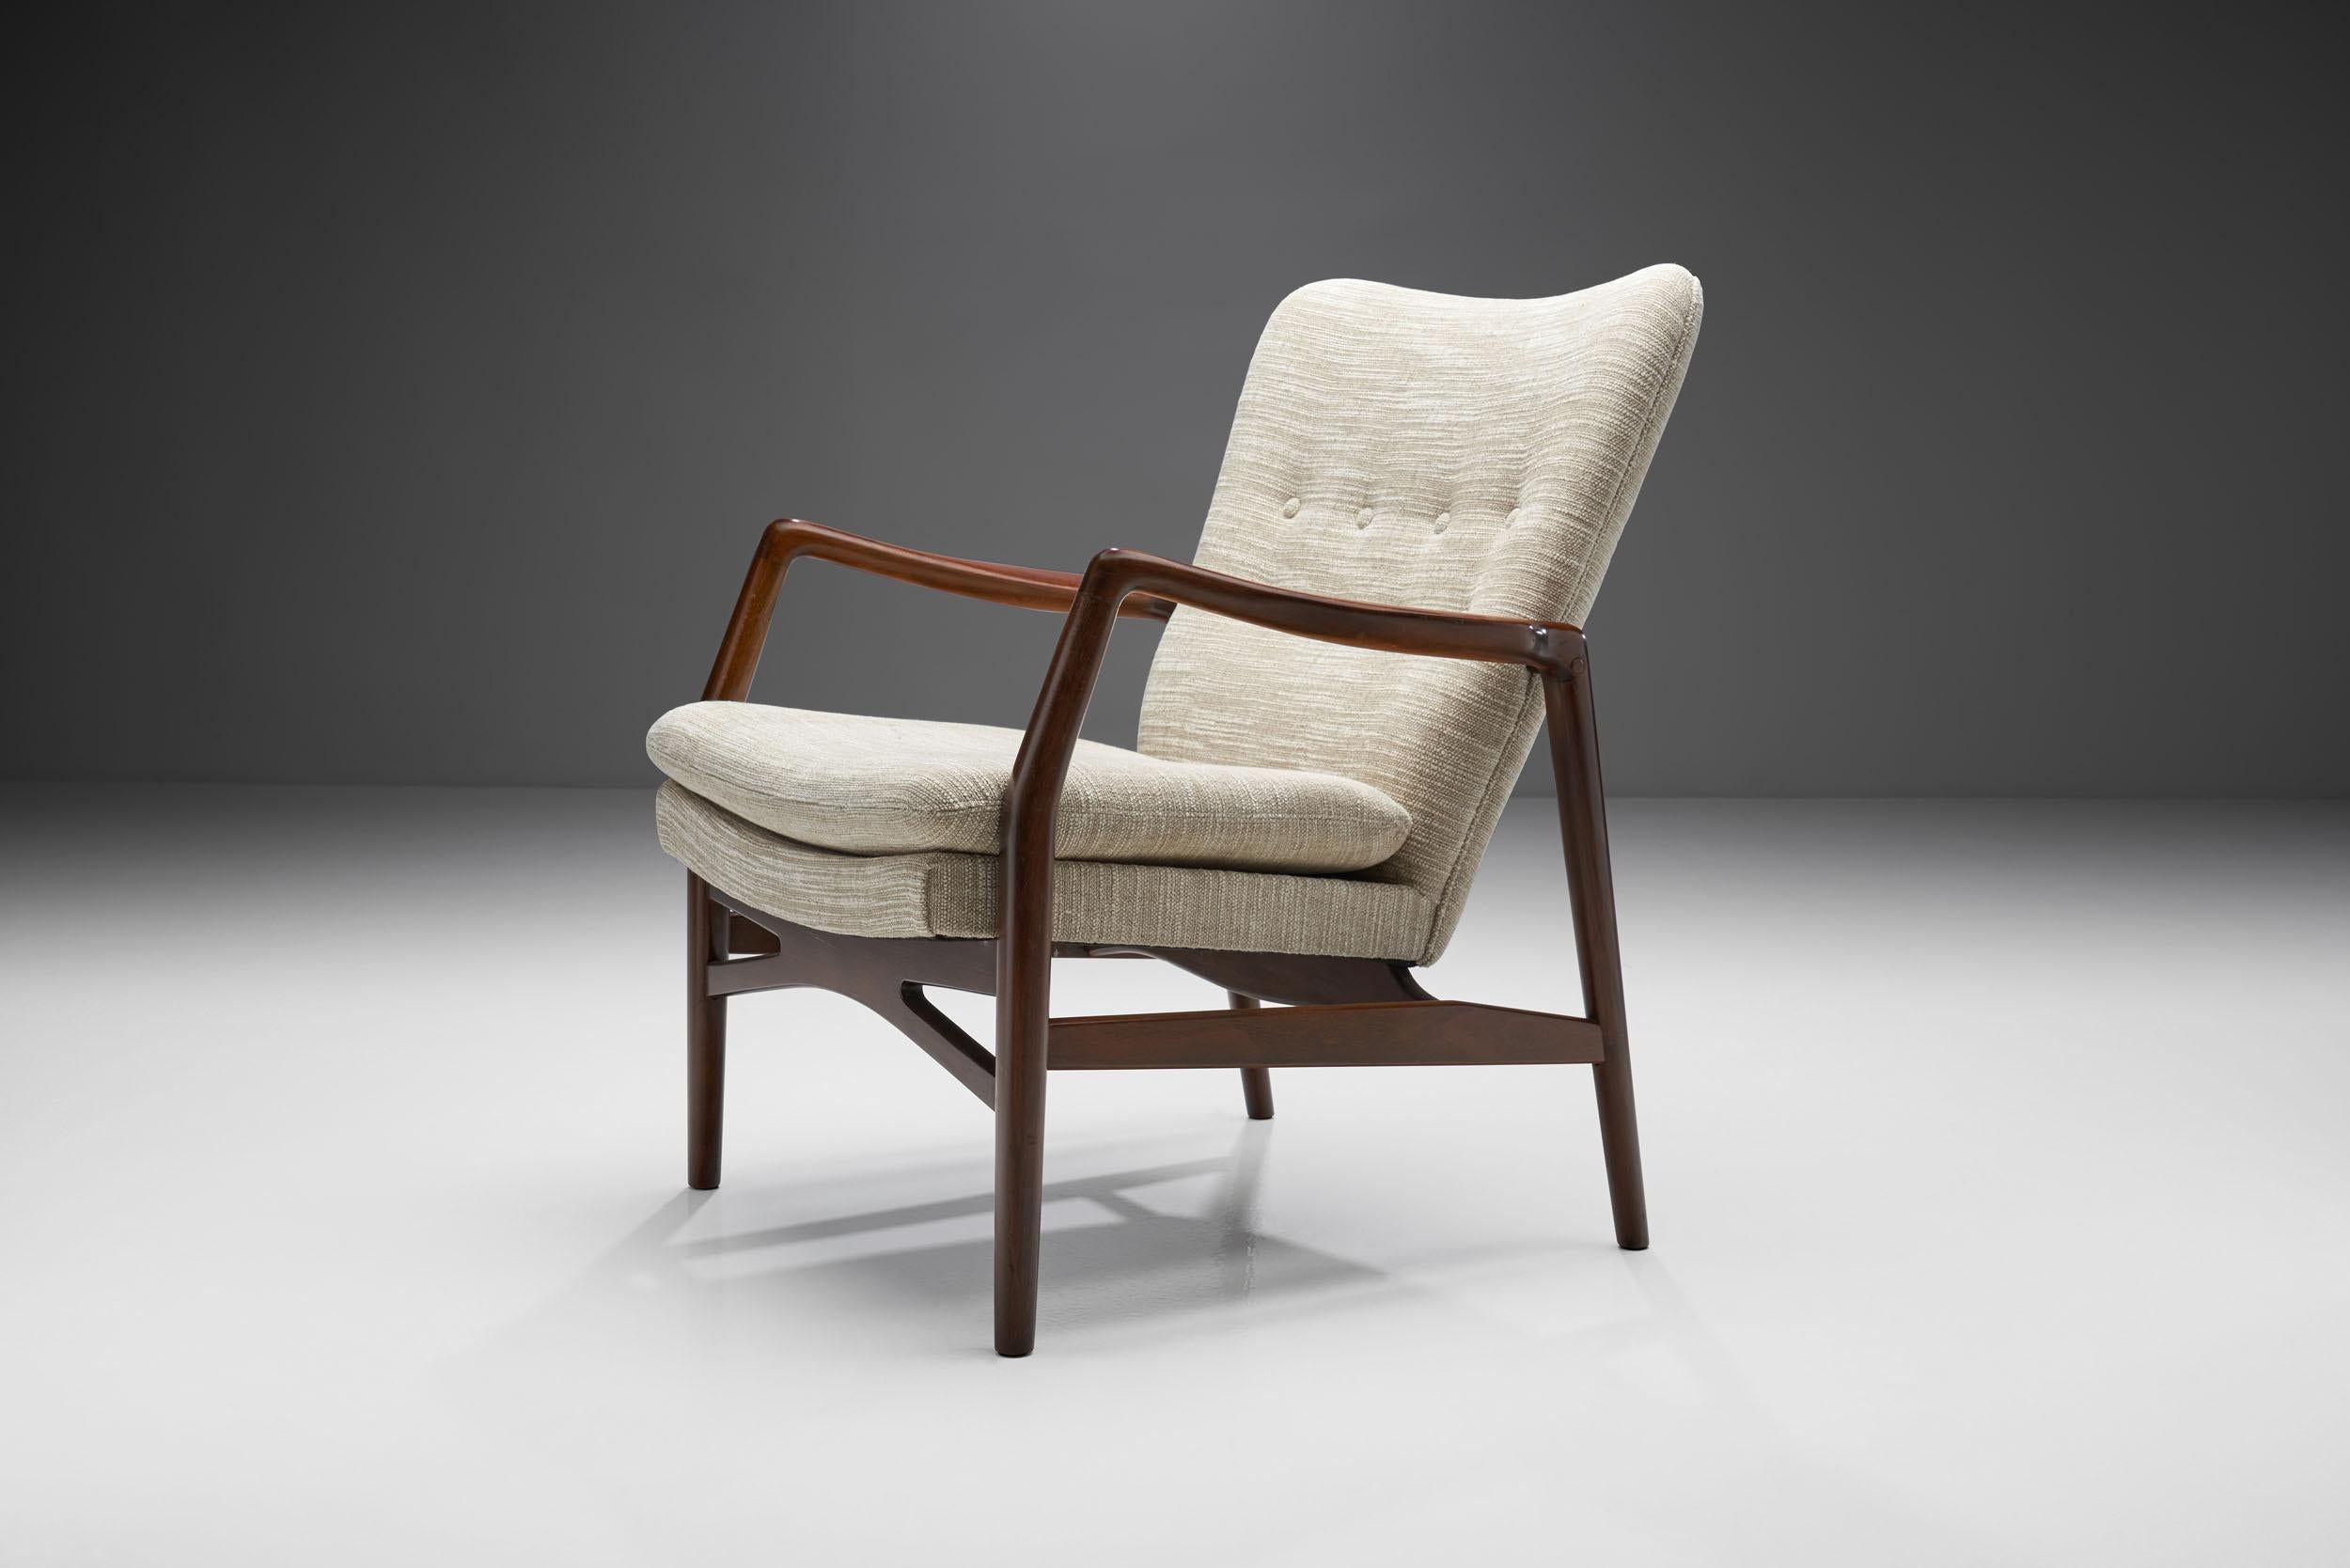 Mid-20th Century Kurt Olsen “Model 215” Easy Chair for Slagelse Møbelværk, Denmark 1954 For Sale